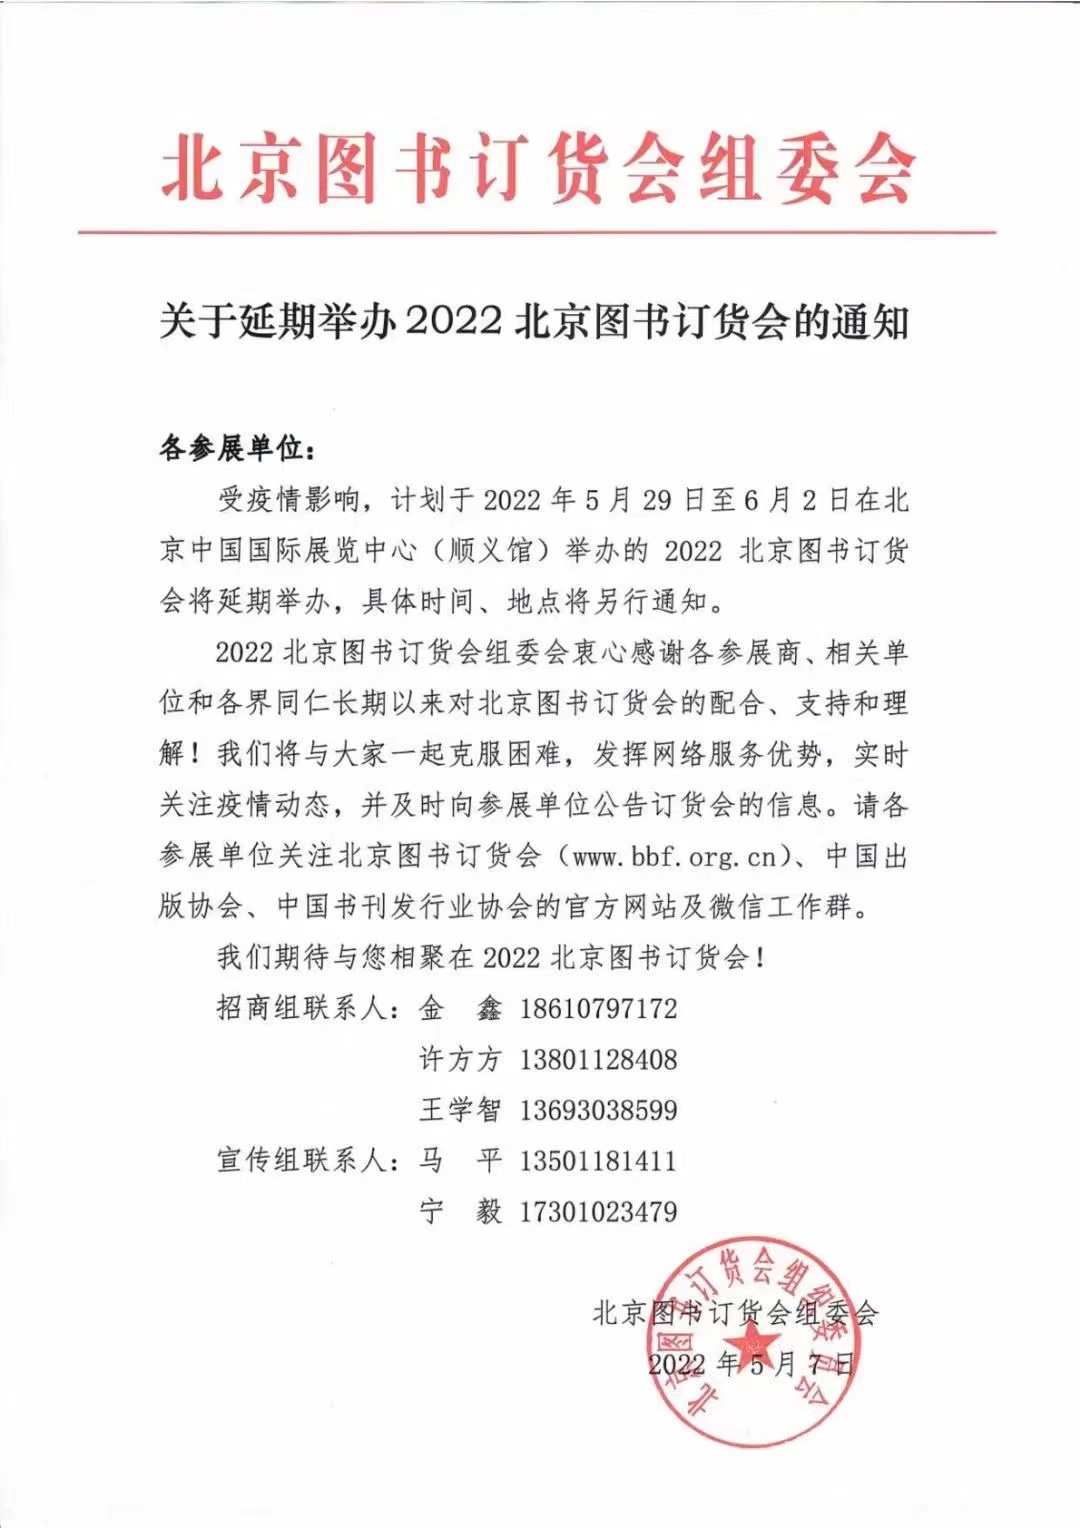 2022北京图书订货会将延期举办